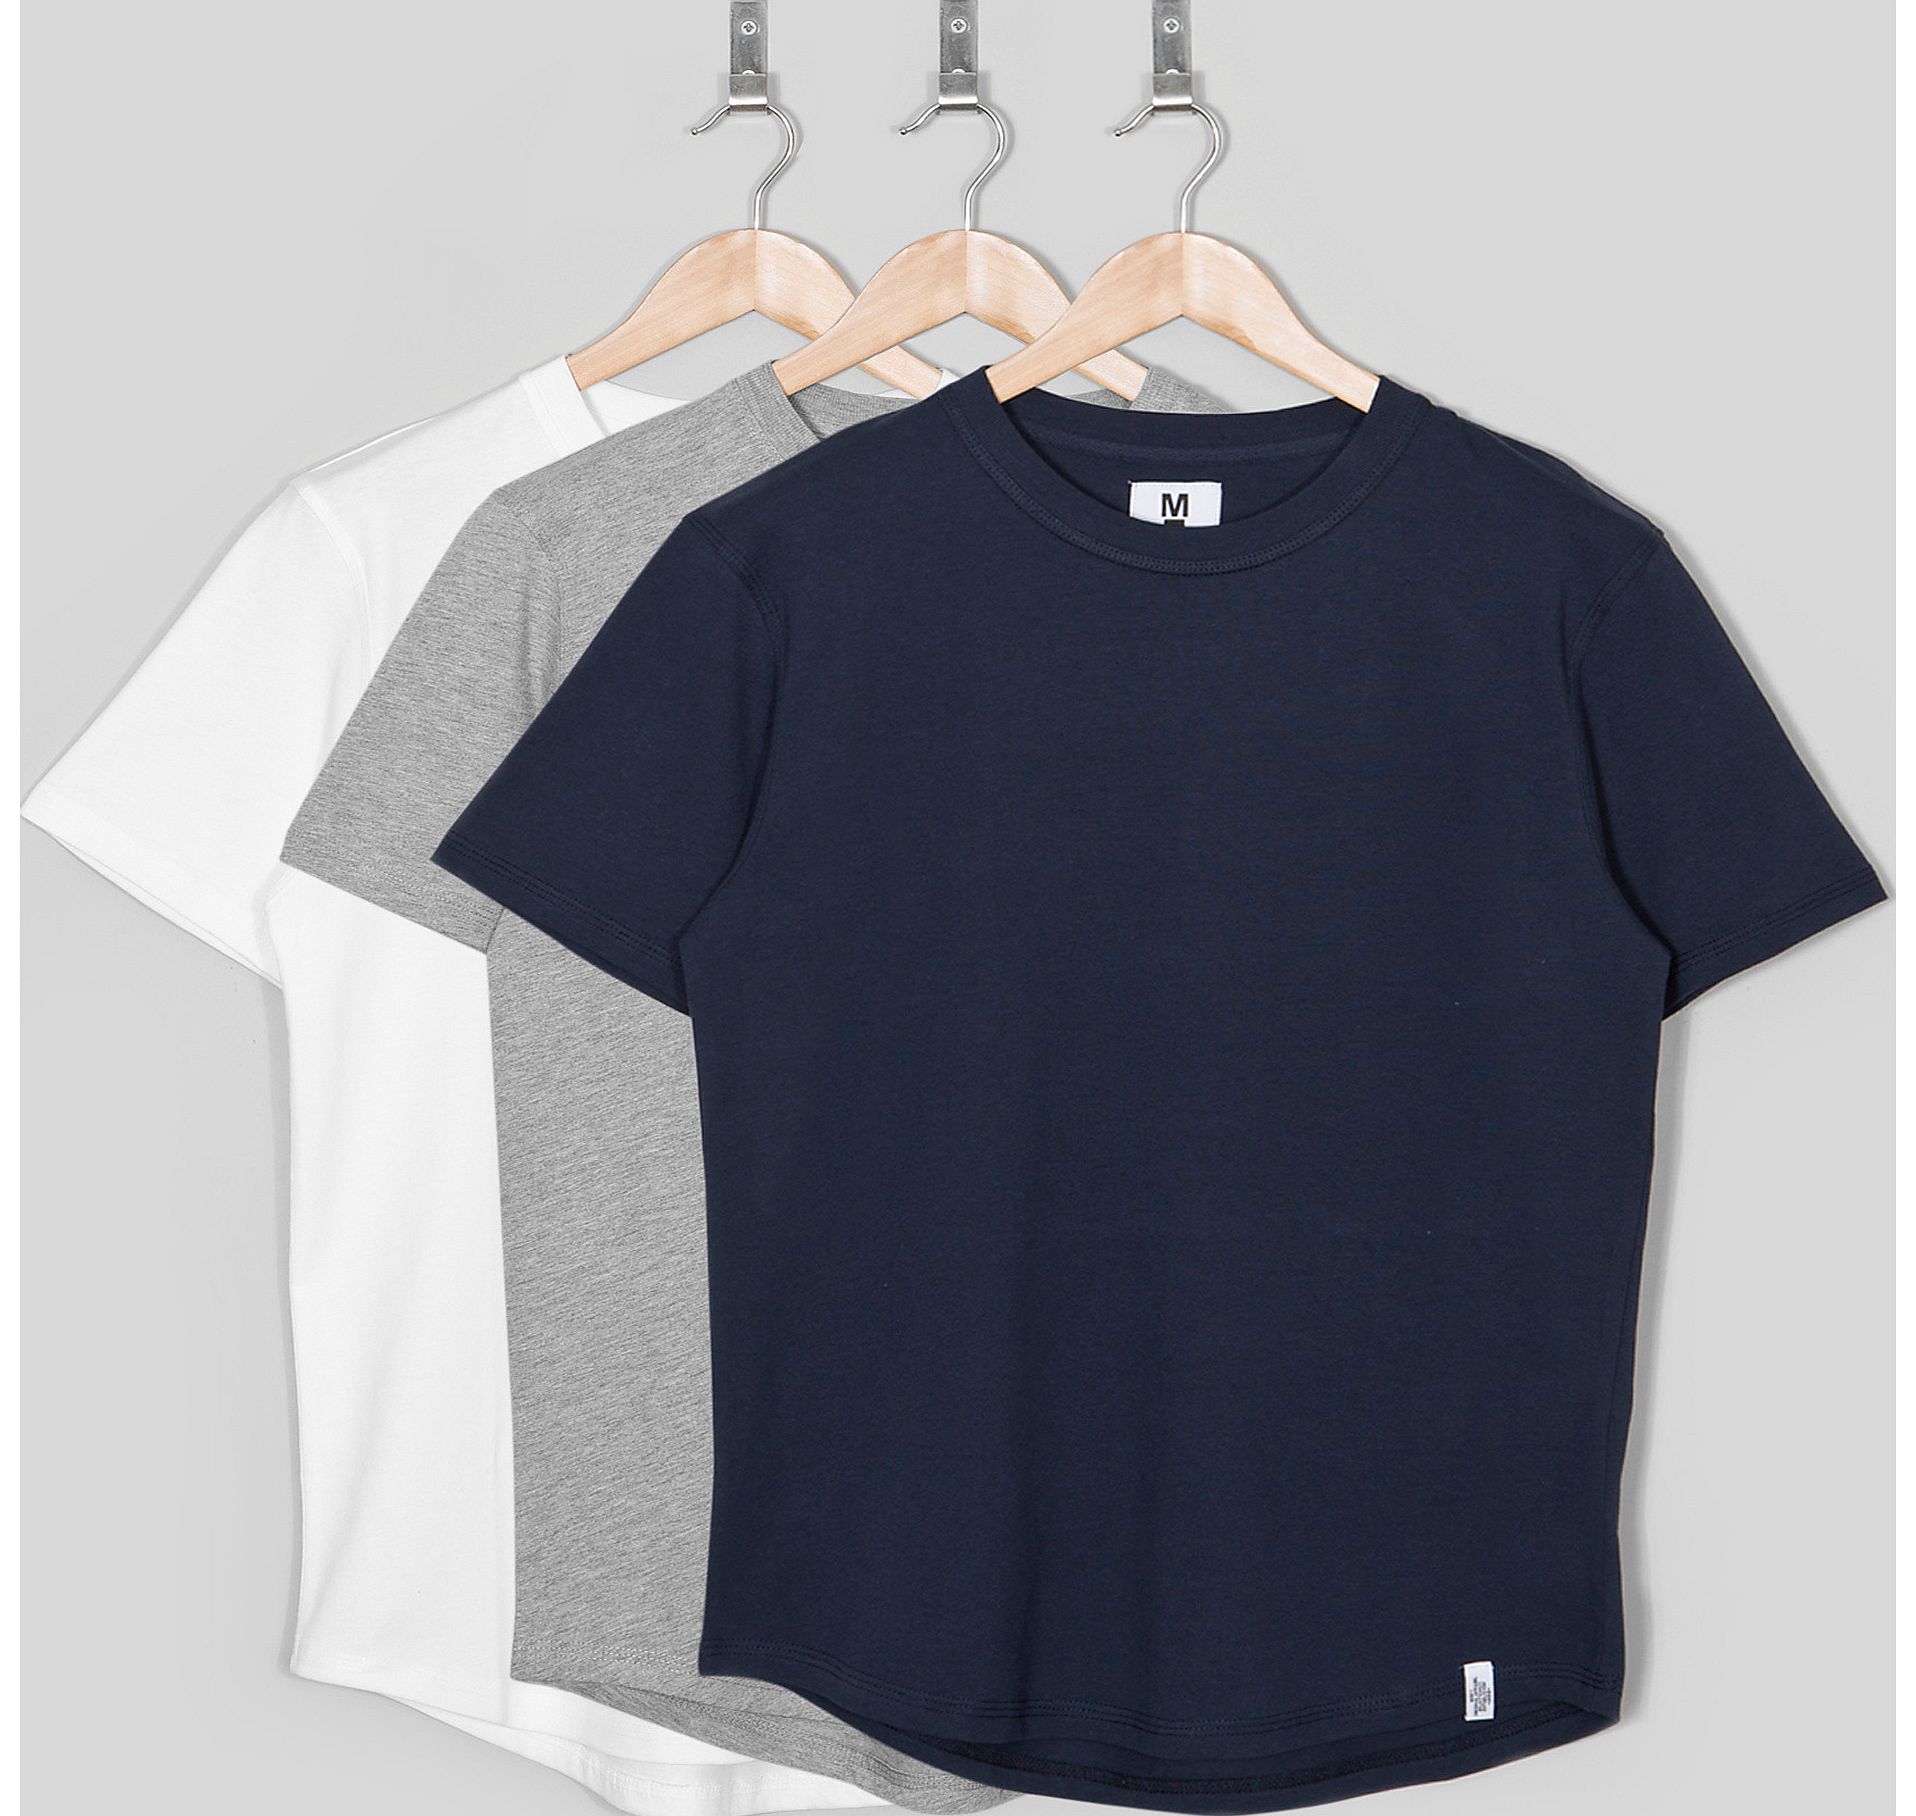 Basics Curved Hem T-Shirt (3 Pack)